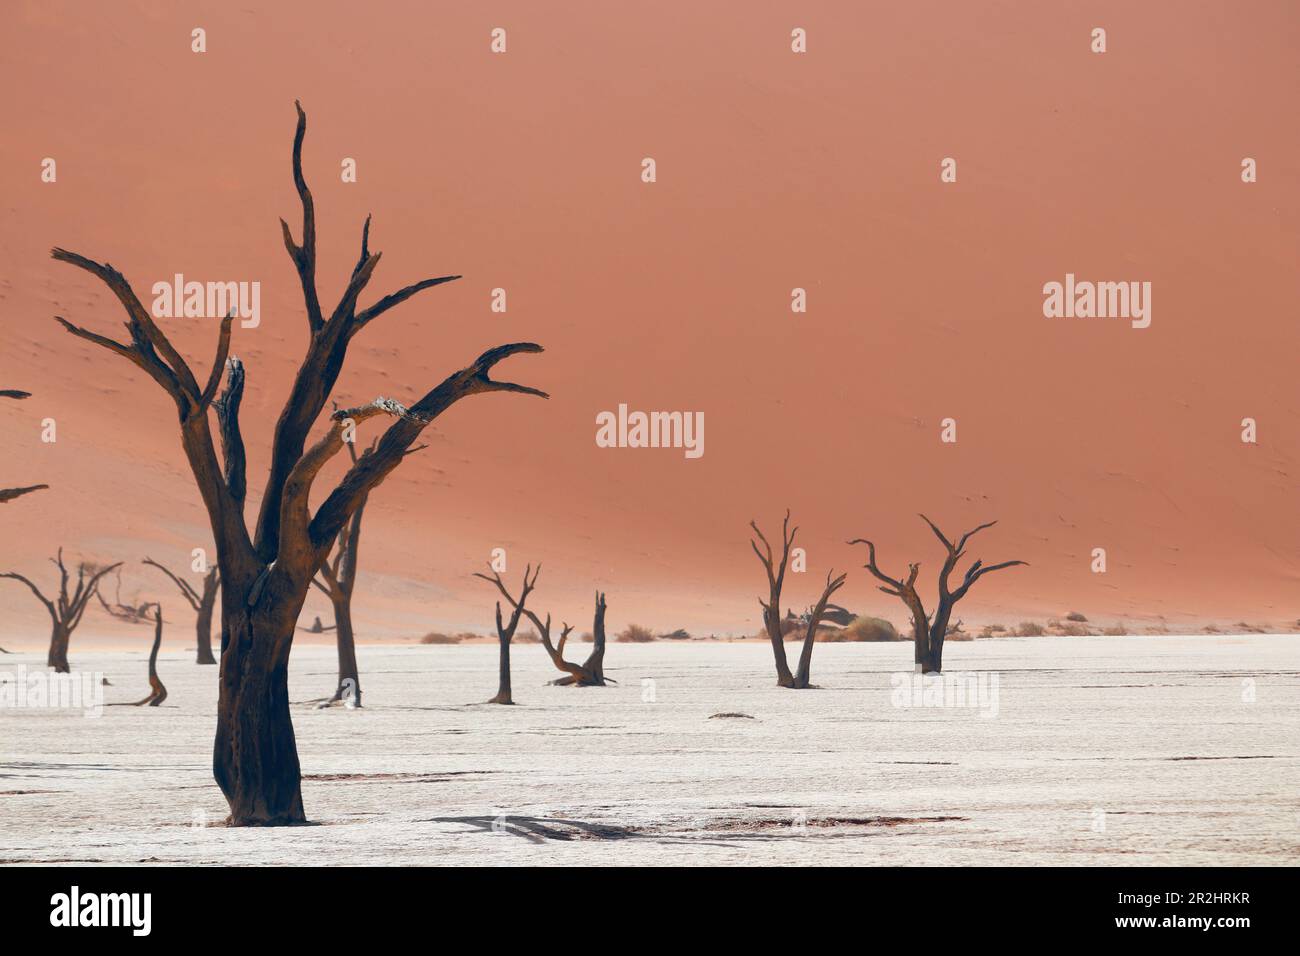 Namibia; Central Namibia; Hardap region; Namib Desert; Namib Naukluft Park; Sosuvlei; Deadvlei or Death Valley; dead acacia trees on a salt pan; frame Stock Photo